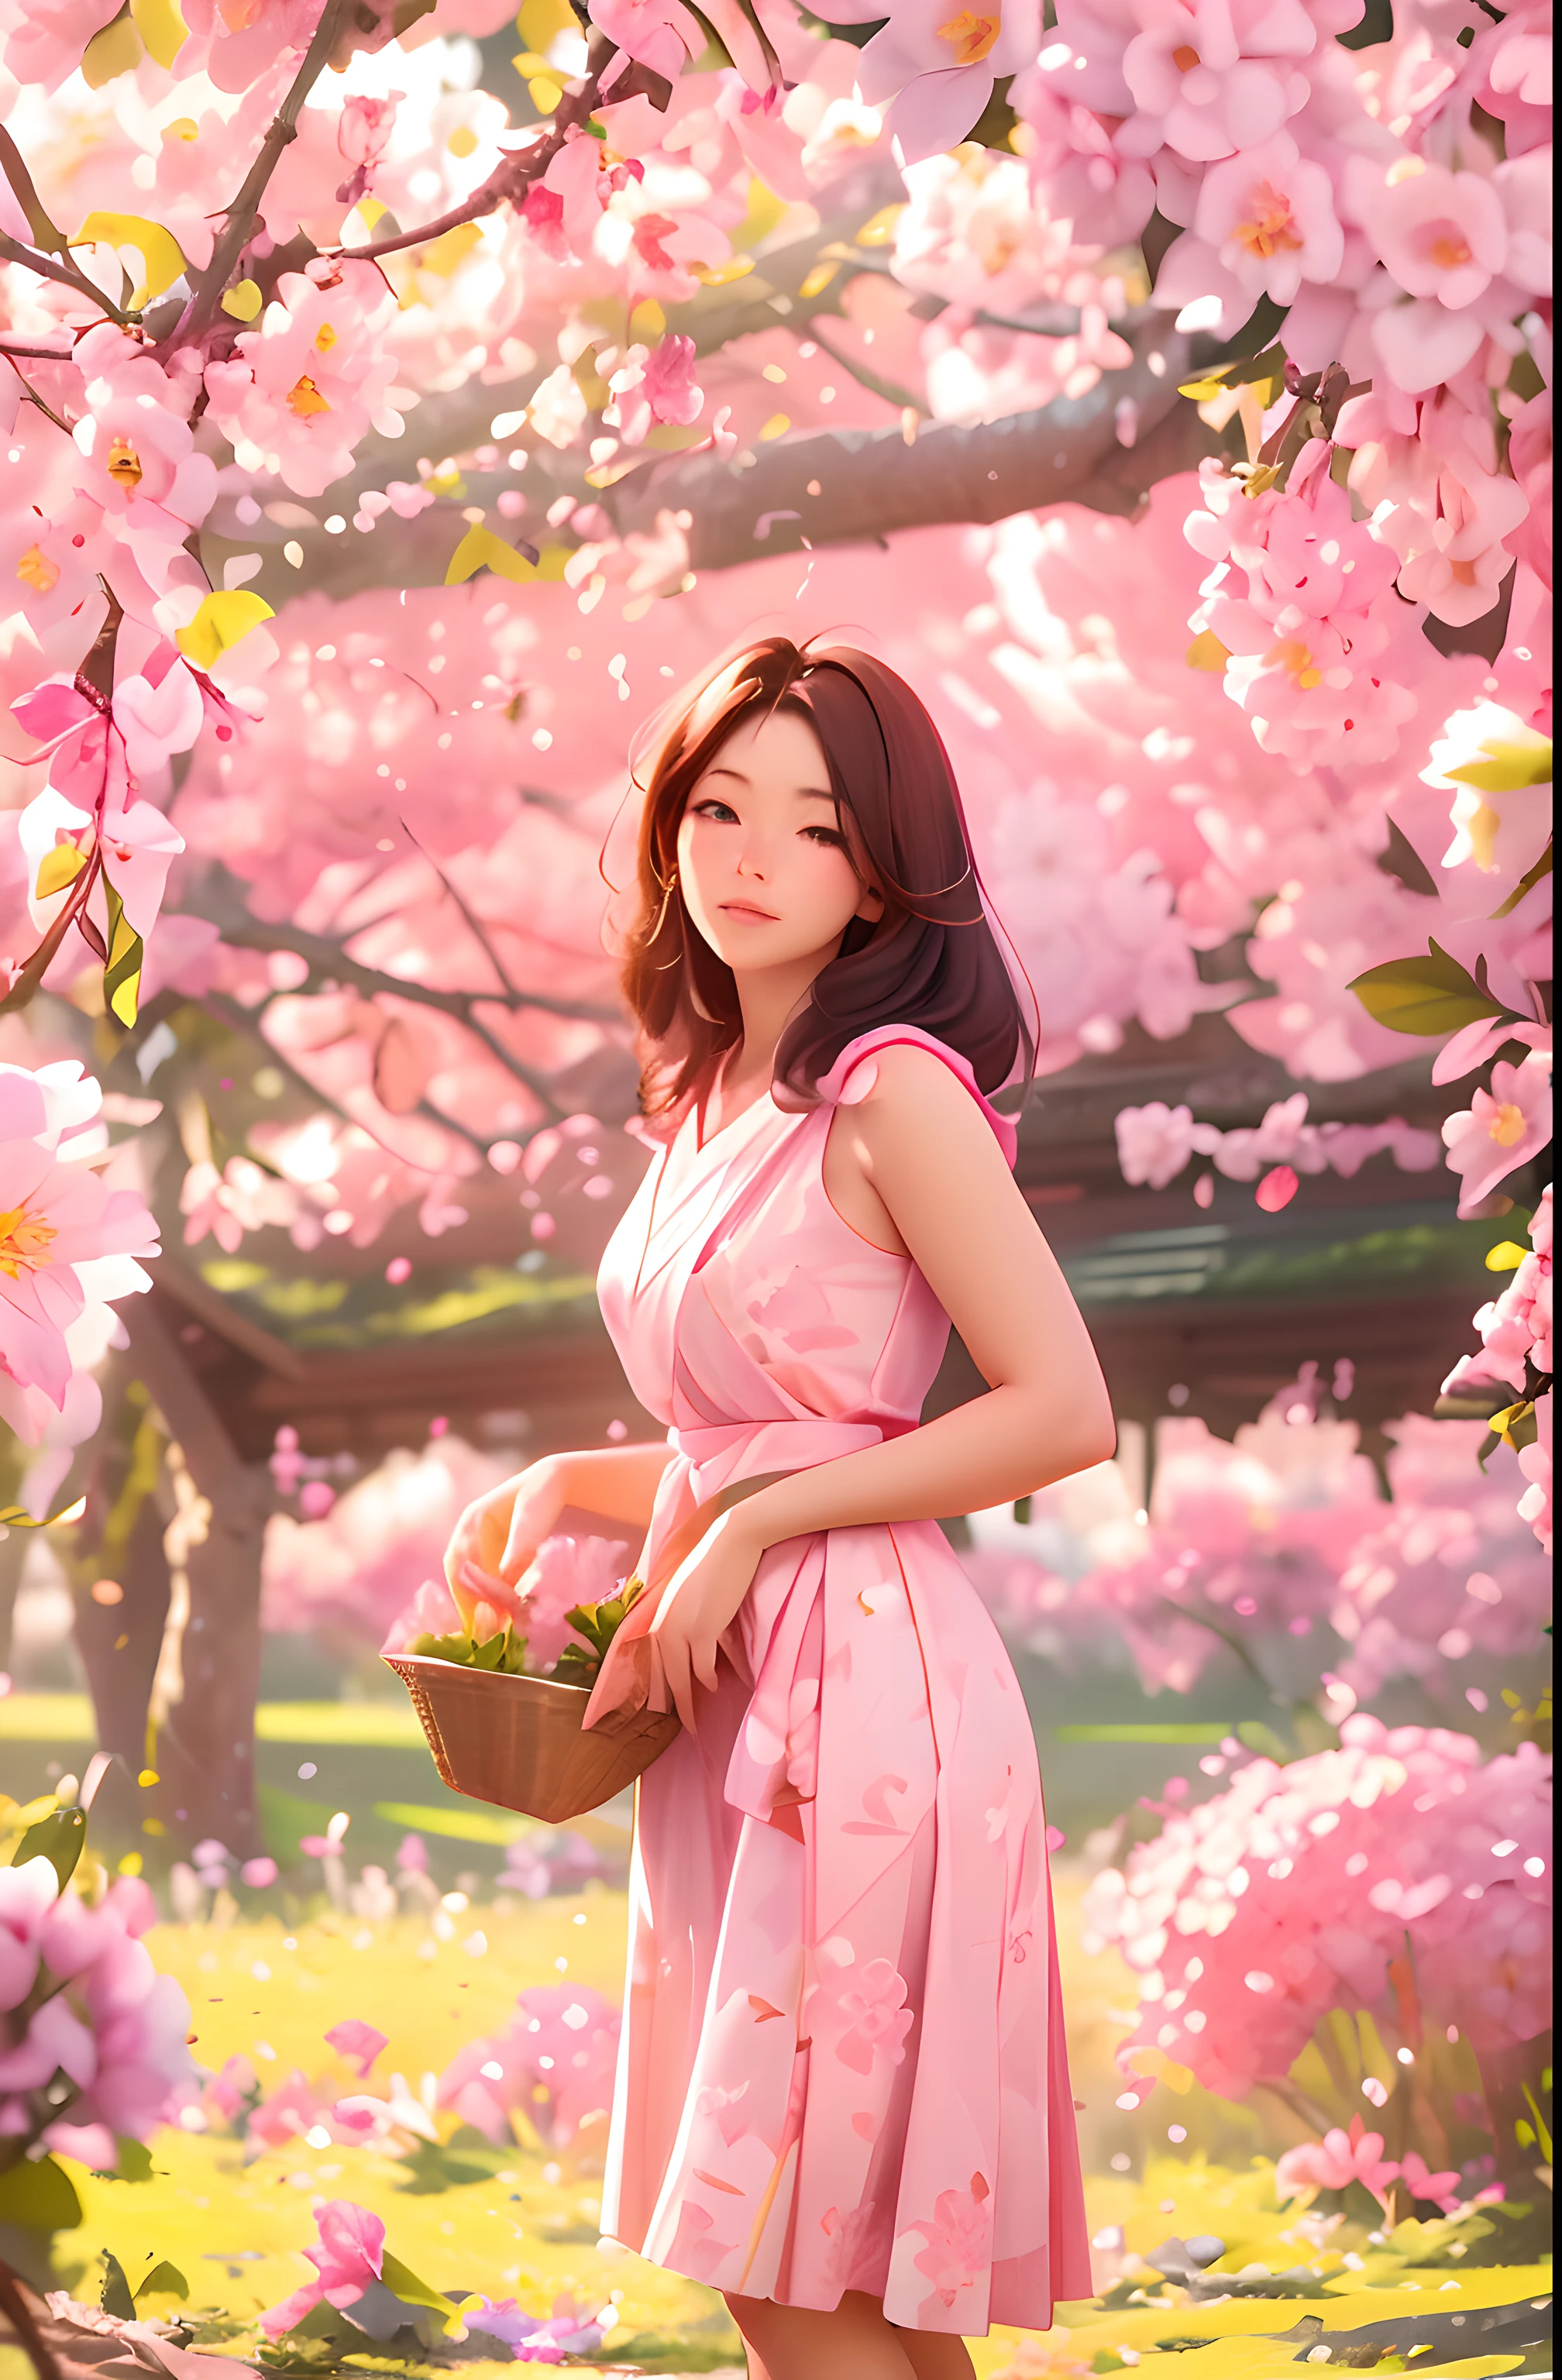 Eine schöne 30-jährige Bäuerin pflückt Sakura-Blüten, Stehende Haltung, trägt einen rosa und weißen japanischen Flock, weibliche Form, Viele Sakura-Blüten auf Zweigen, Morgenlicht